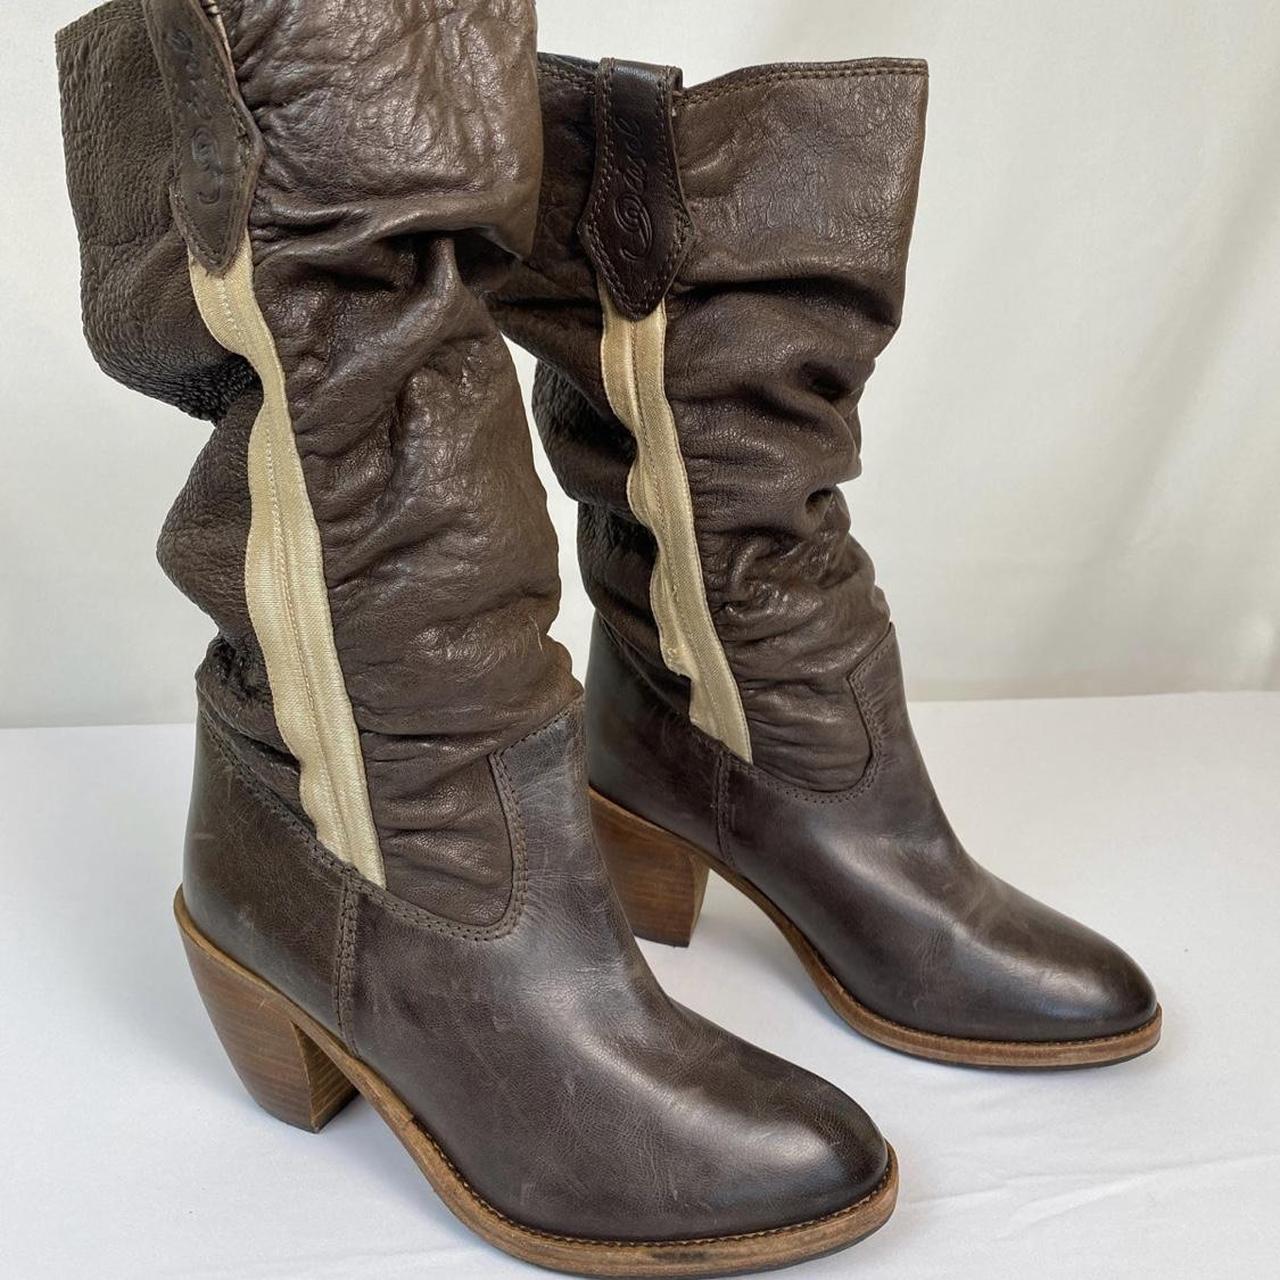 Diesel Slouchy Cowboy Boots, genuine leather, brown/... - Depop